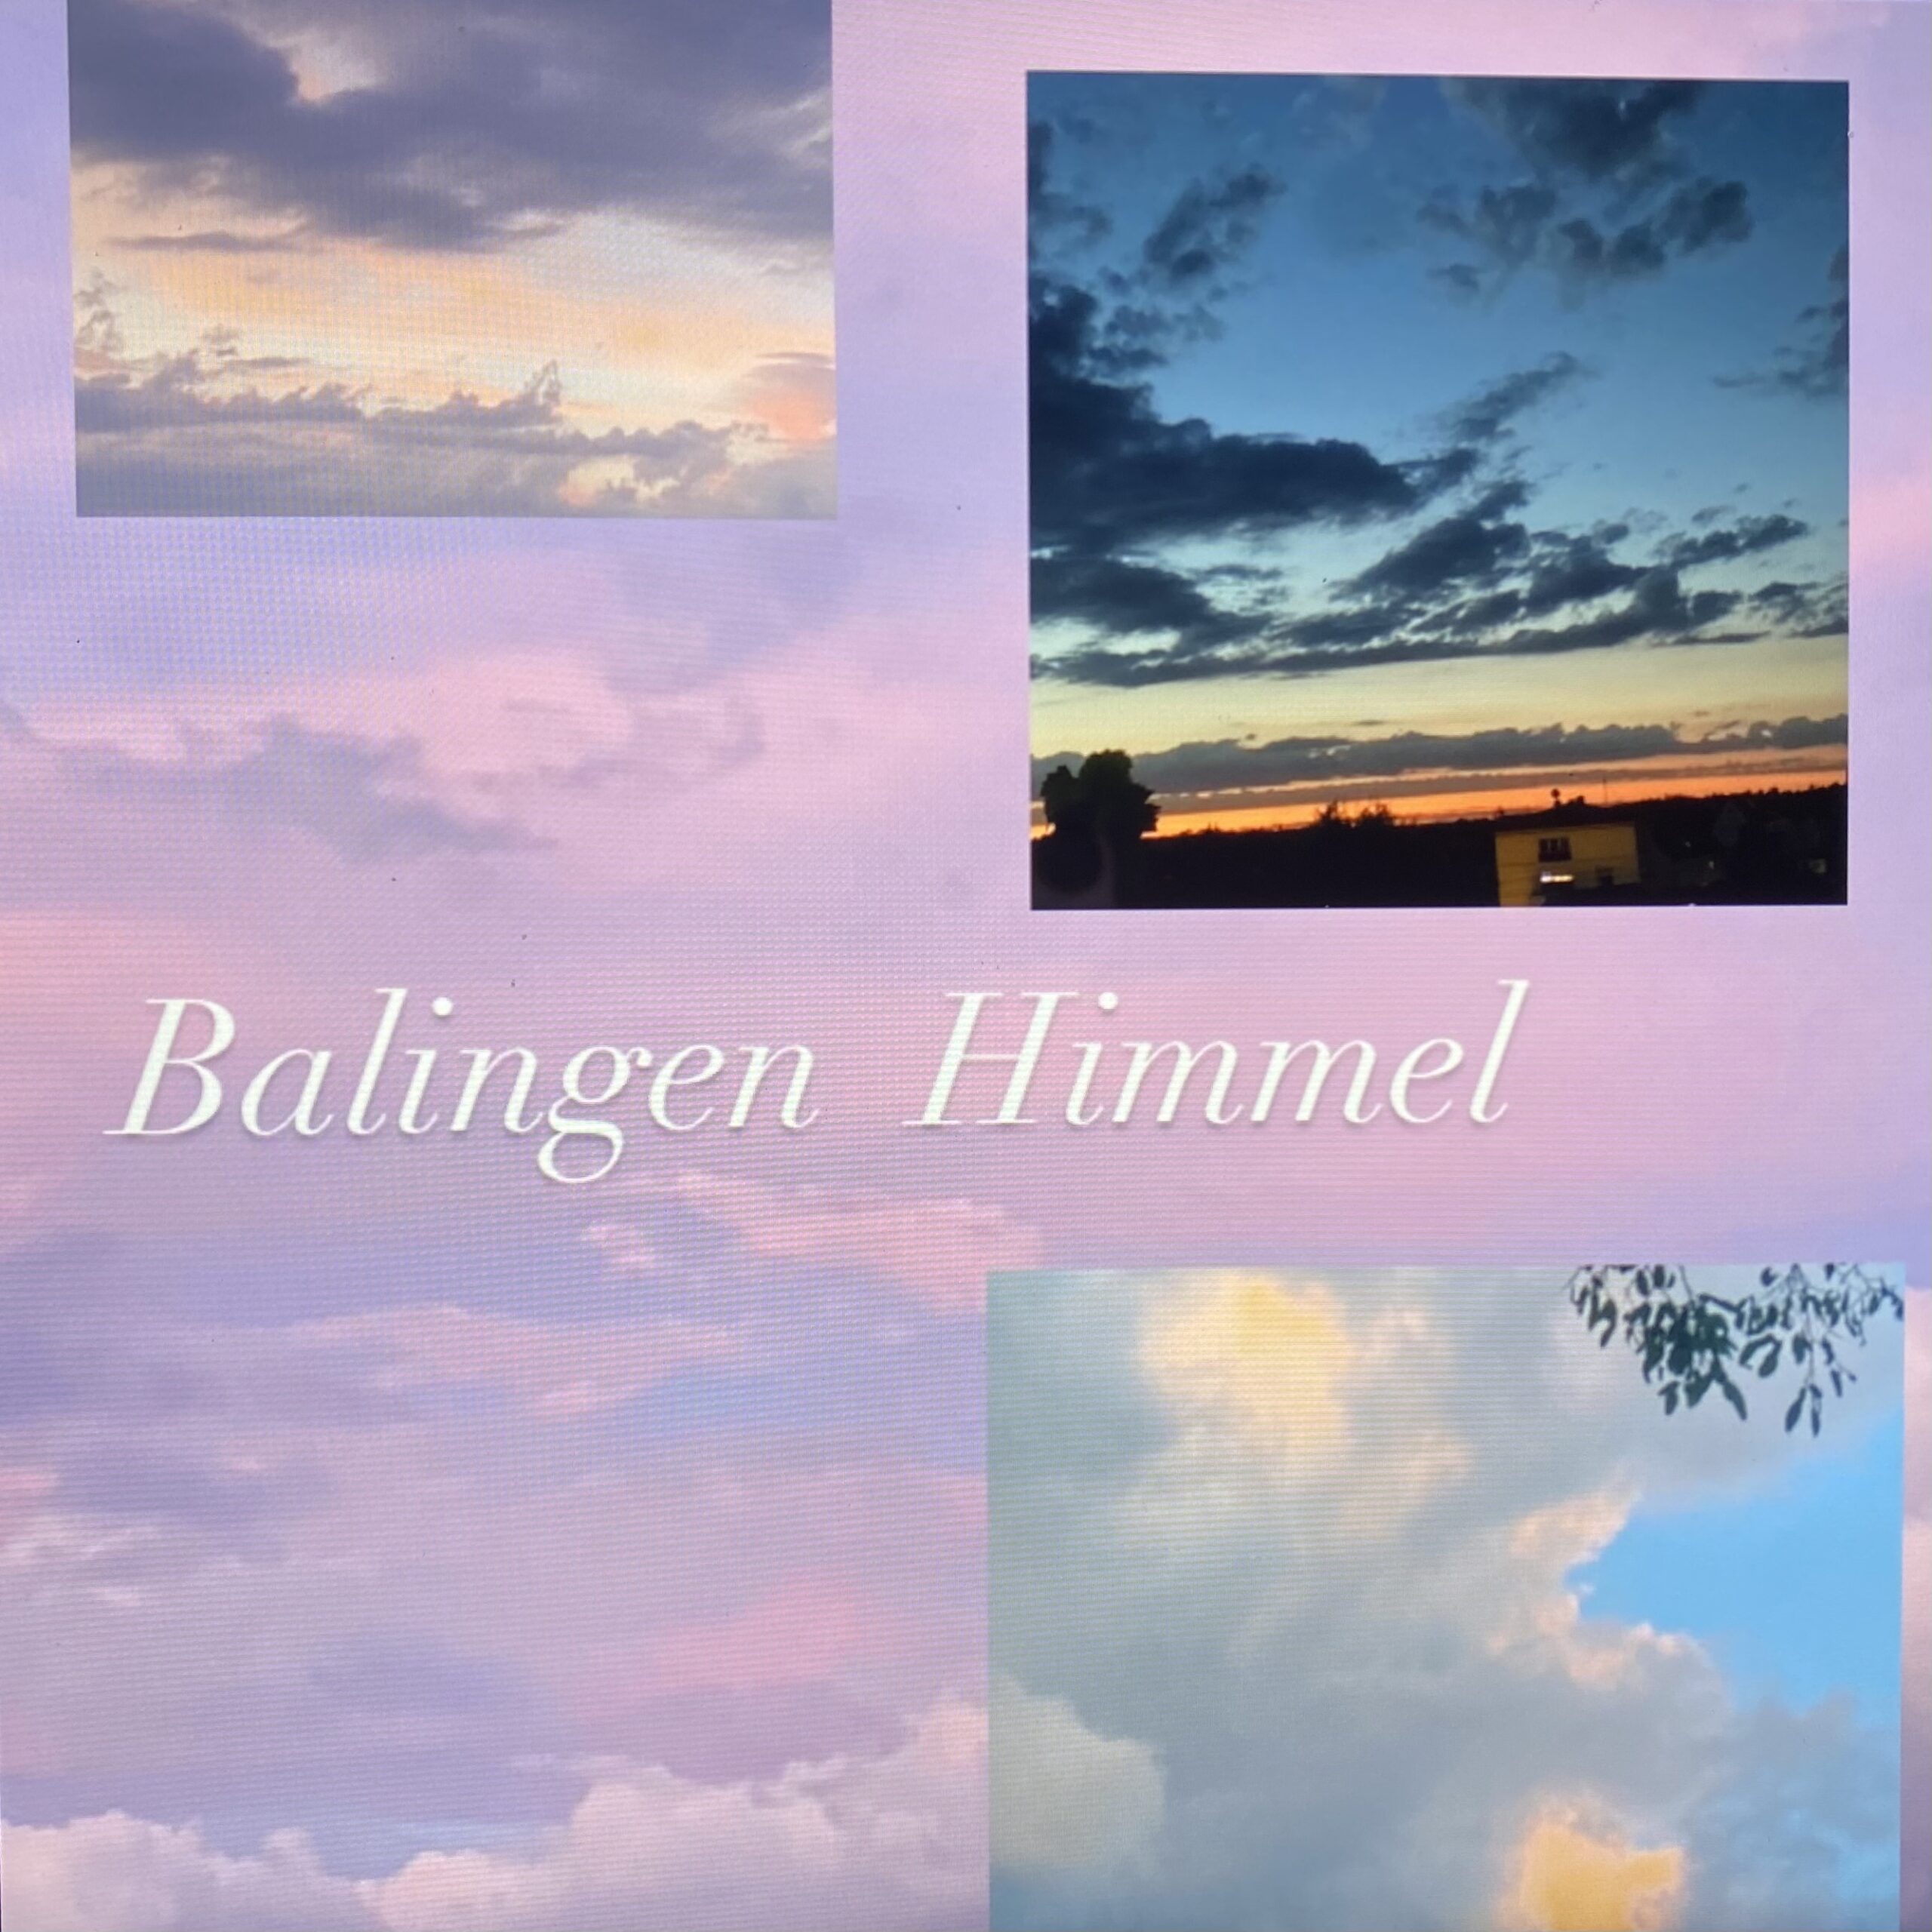 Ich habe immer wieder den Himmel in Balingen fotografiert und daraus eine Collage erstellt. Faszinierend ist, dass der Himmel immer wieder anders aussieht.